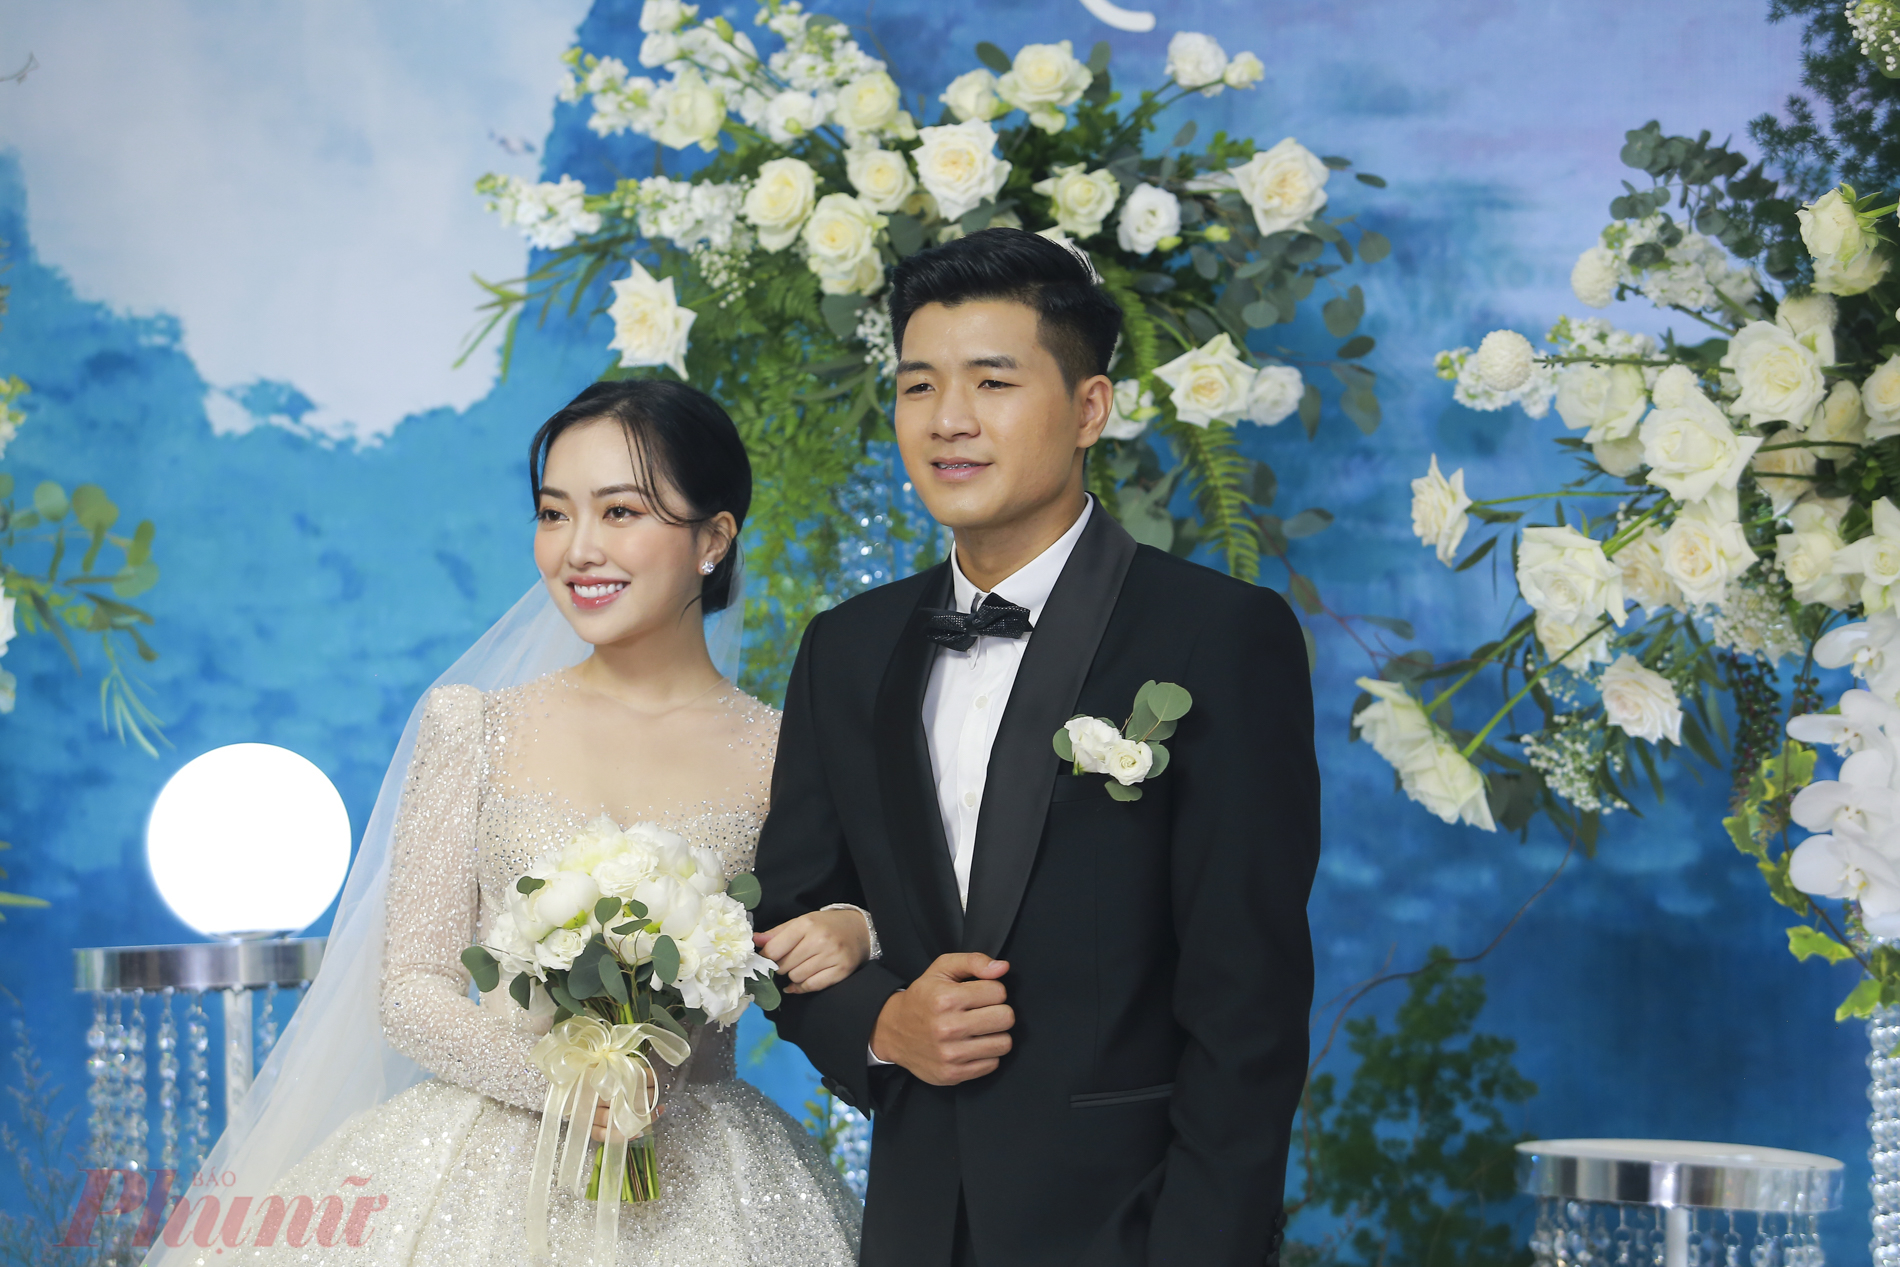 Sau khi mặc lên chiếc váy cưới, cô dâu Hà Trang đẹp rạng ngời sánh bên chú rể Đức Chinh trong buổi tiệc